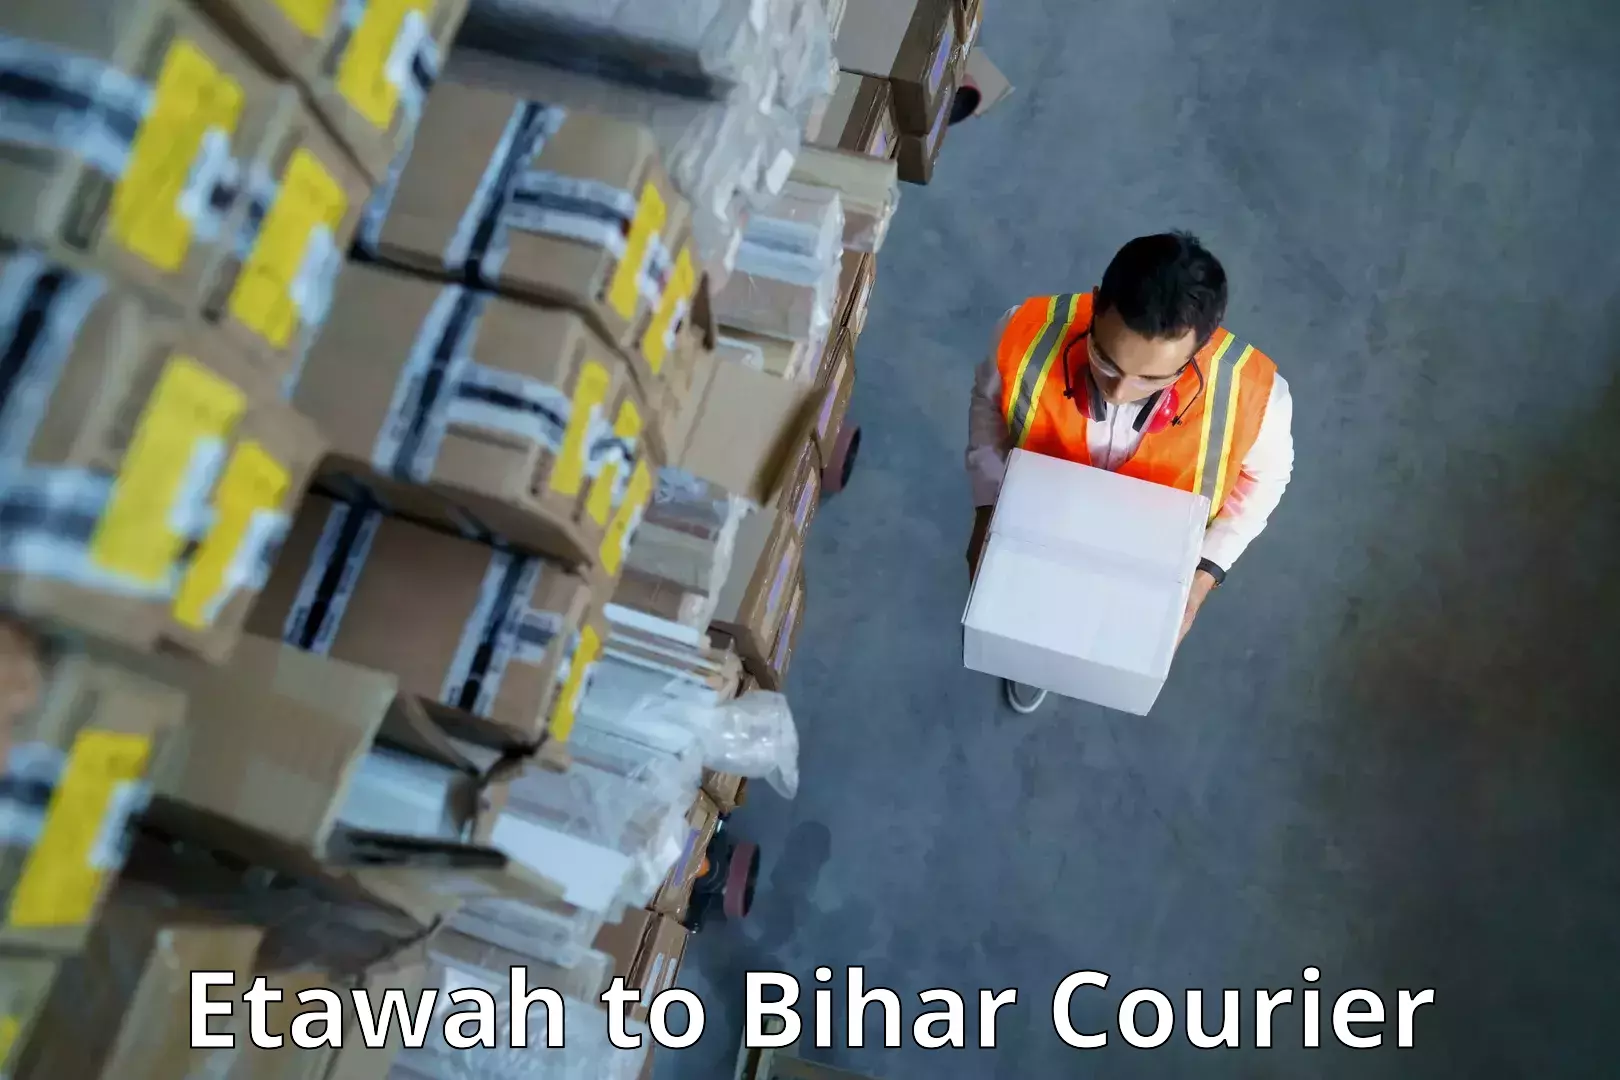 Lightweight courier Etawah to Bihar